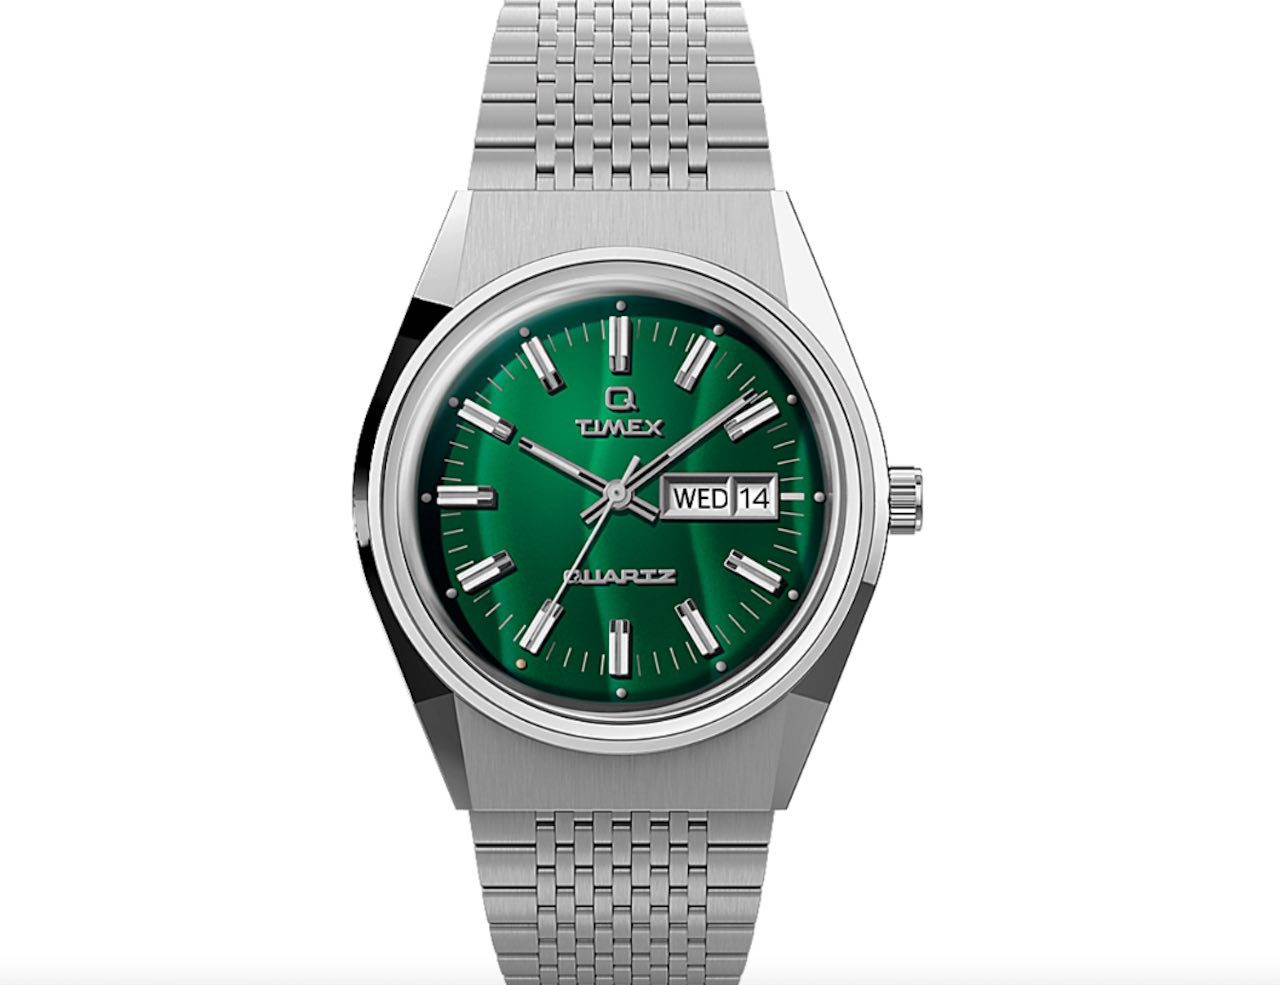 Nieuw Timex horloge is ruim 40x goedkoper dan een Rolex